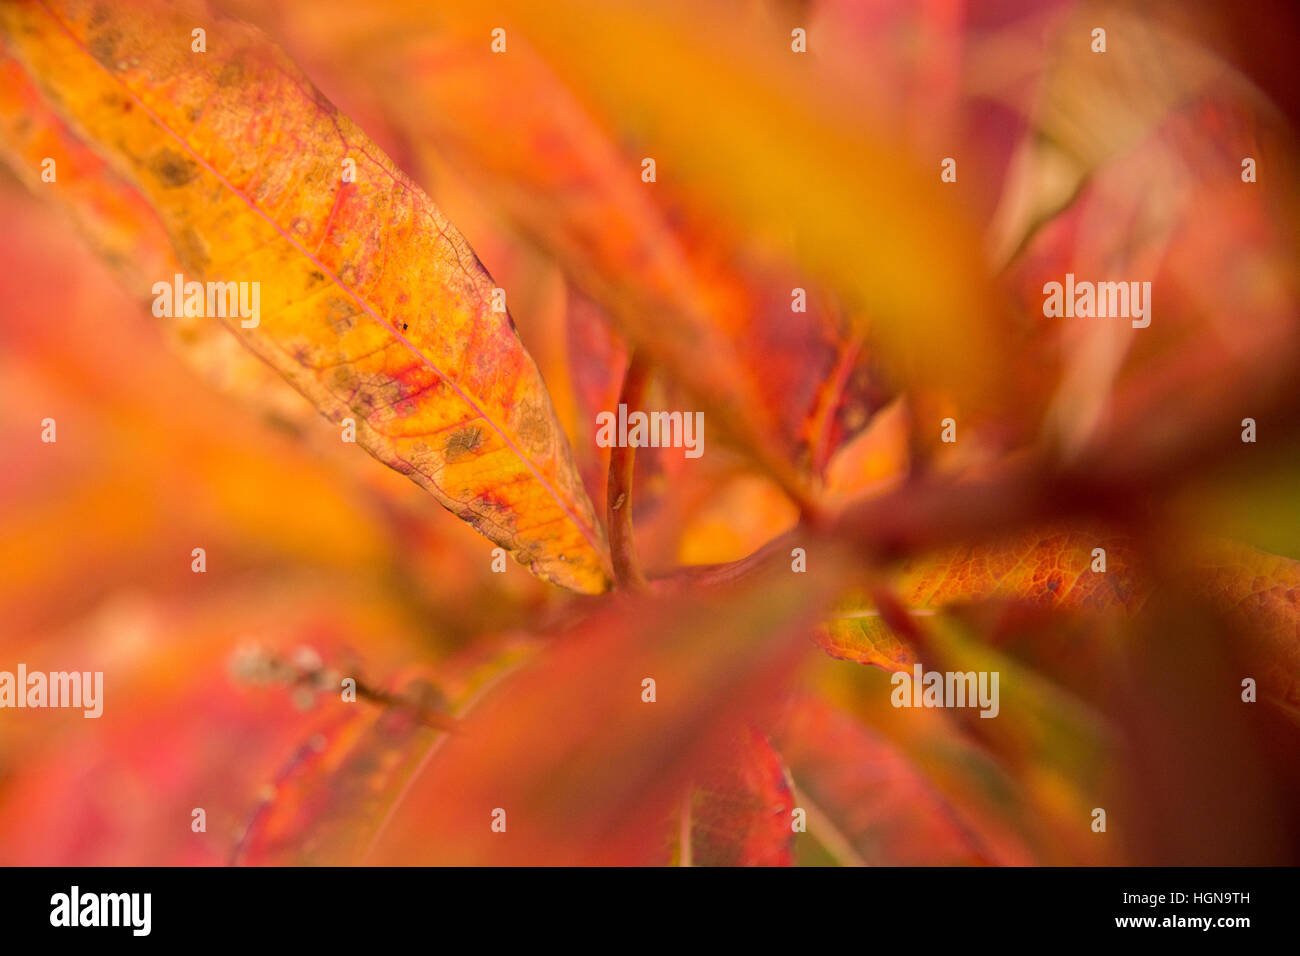 Rose Bay willow herb (Chamerion angustifolium) diventa rosso e yellowin autunno come la clorofilla si rompe. Foto Stock